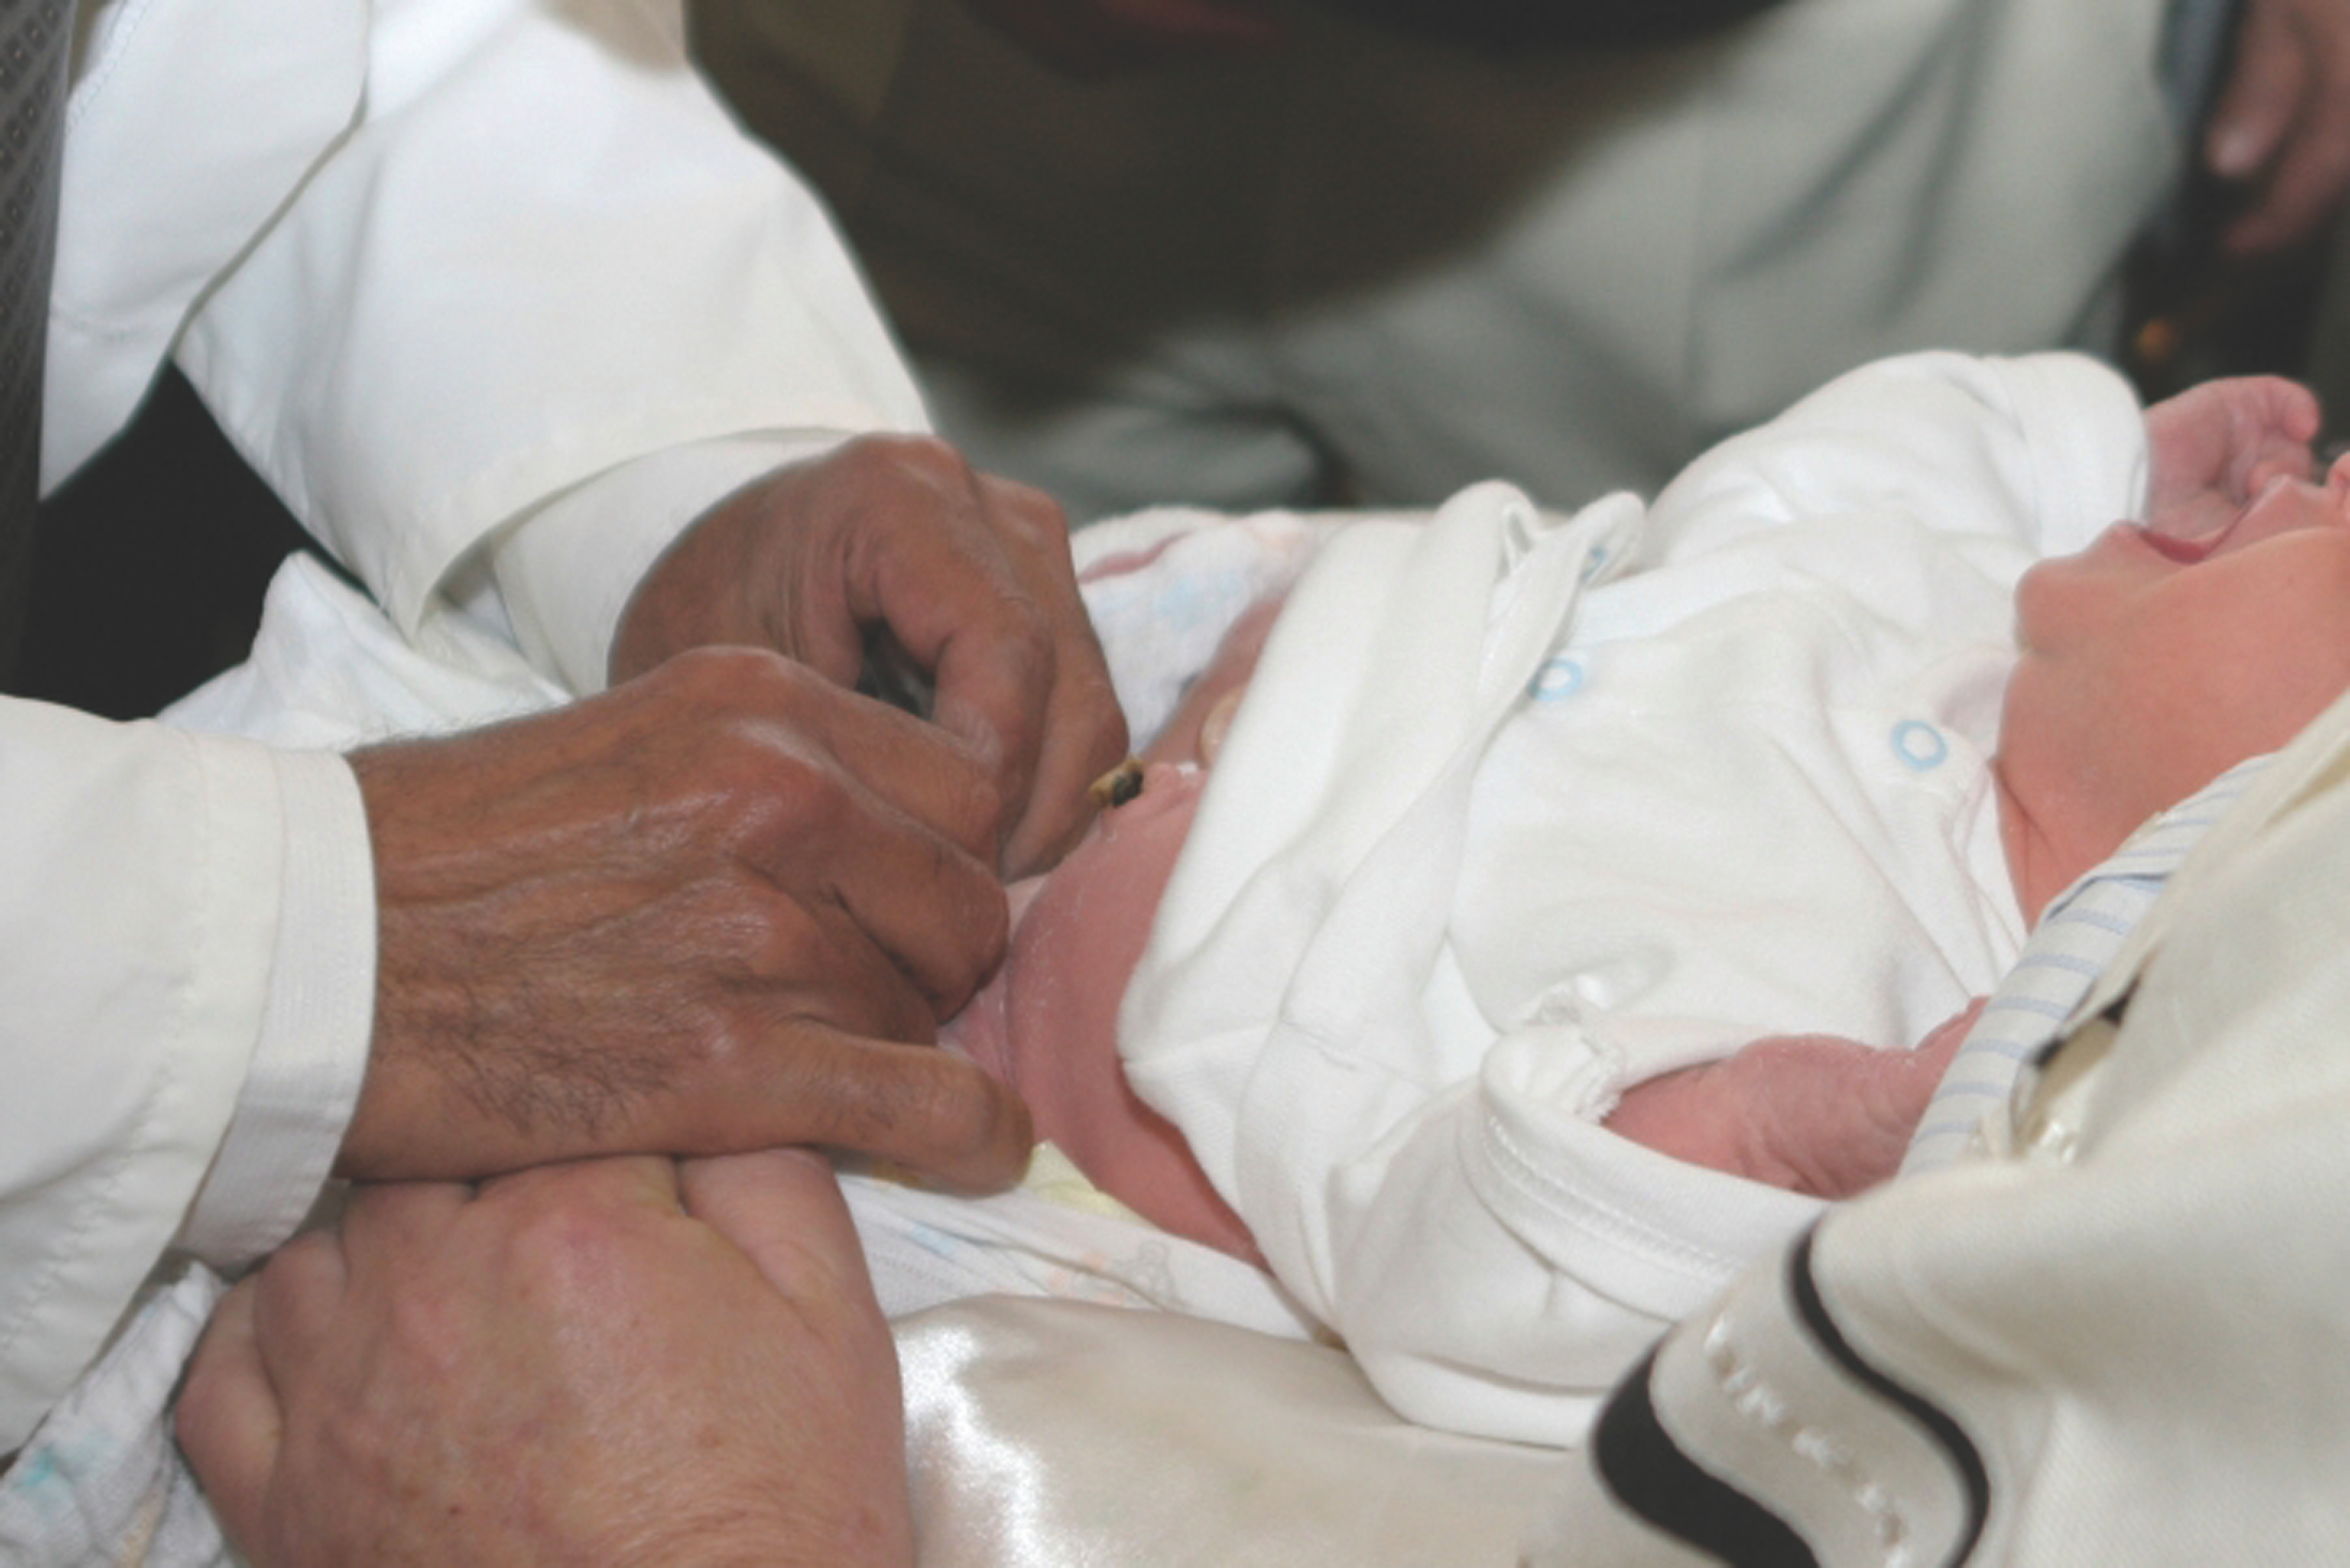 Los beneficios de la circuncisión superan los riesgos